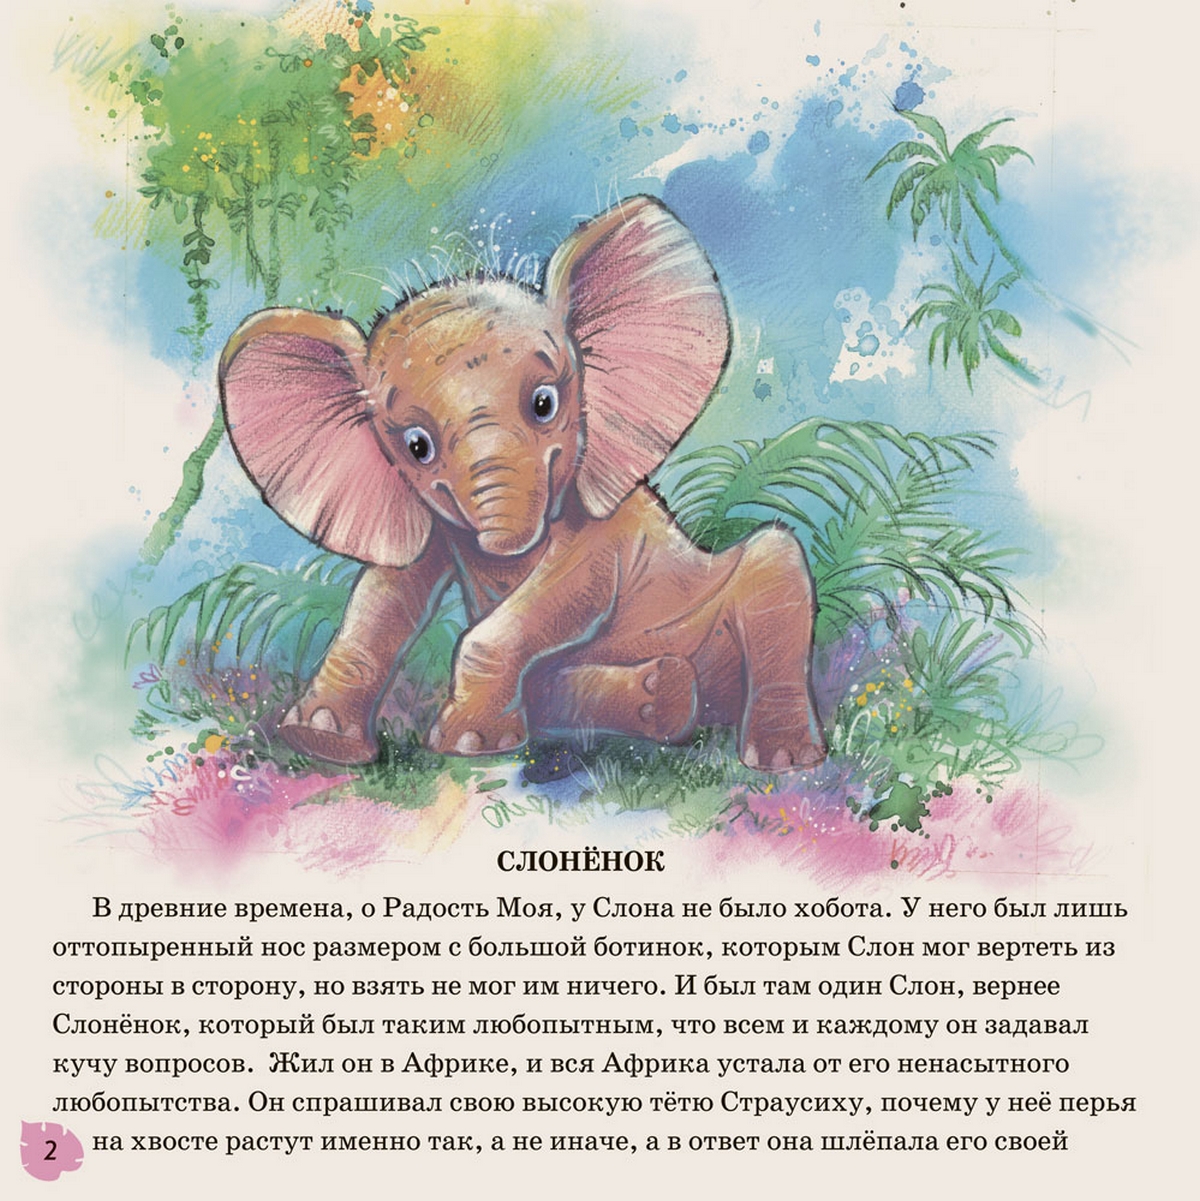 Книга слоновые. Книжка Киплинга Слоненок. Киплинг Редьярд "слонёнок". Сказка Слоненок Киплинг.